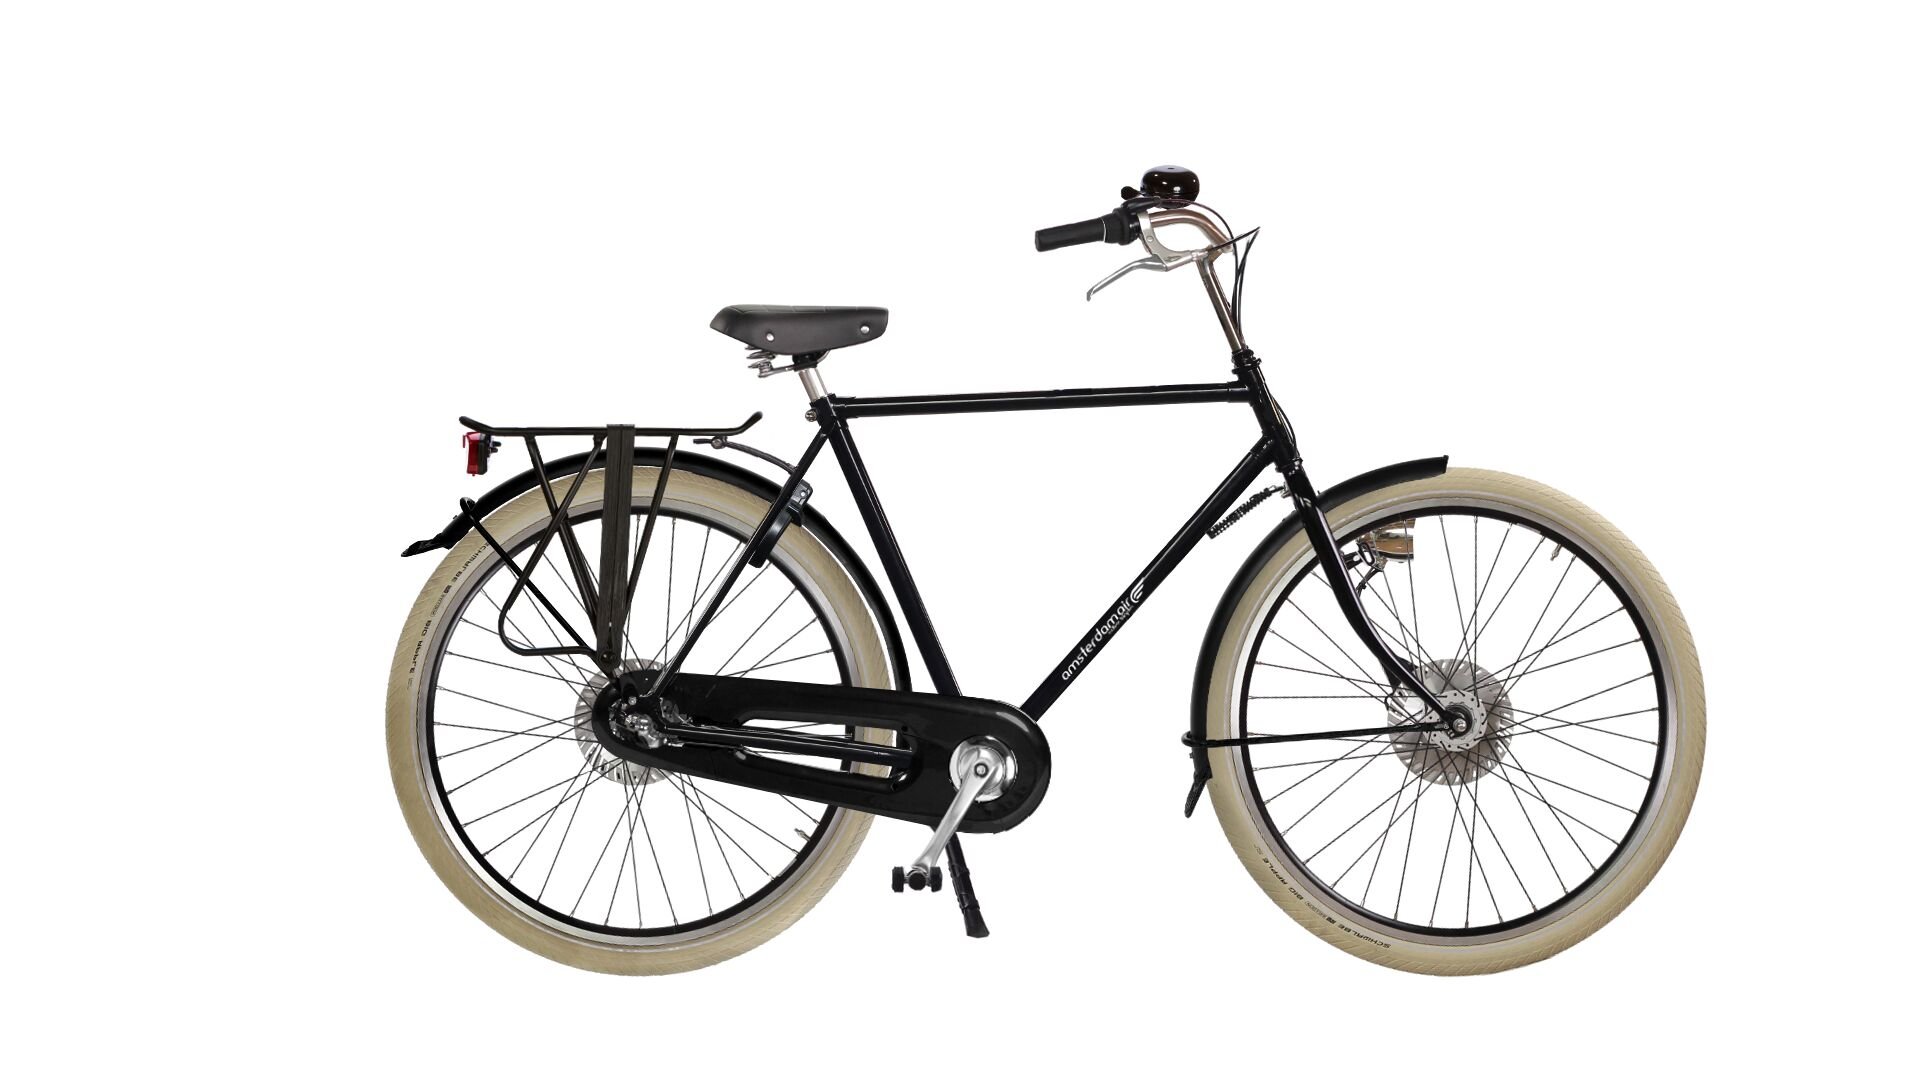 Configurateur du vélo hollandais Opa Premium